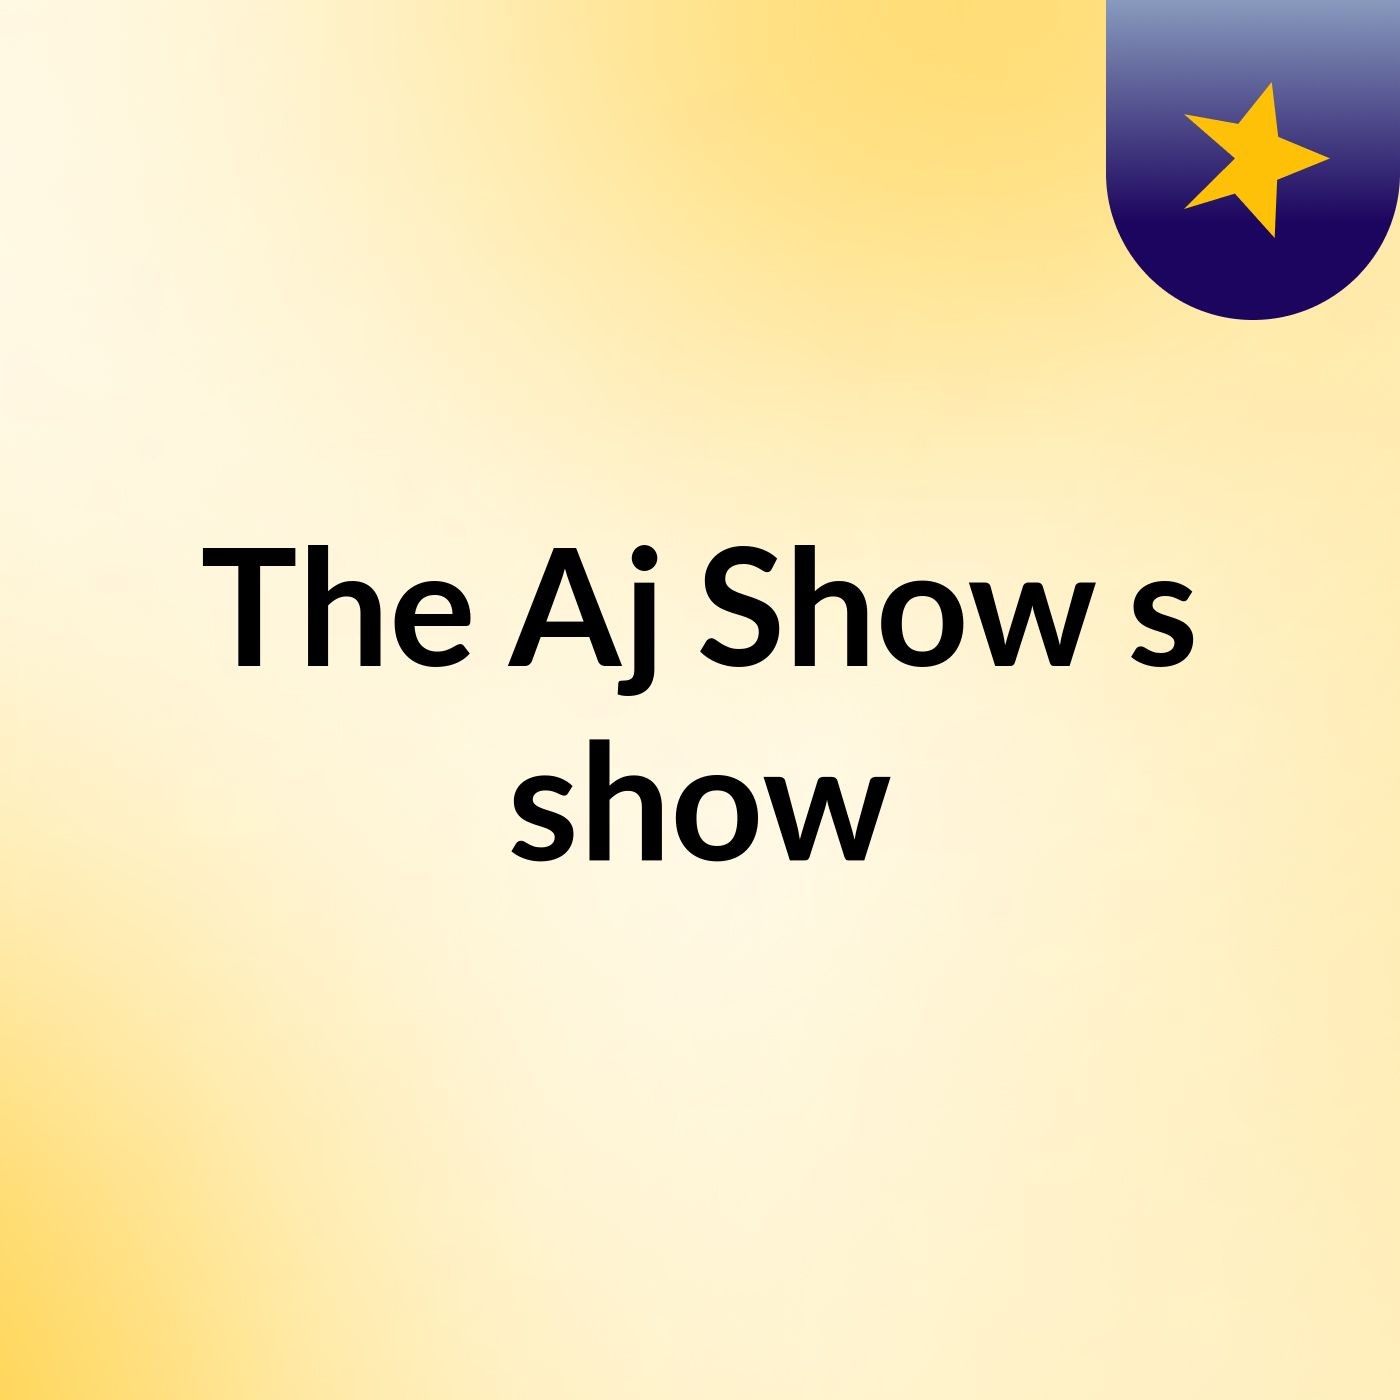 The Aj Show's show